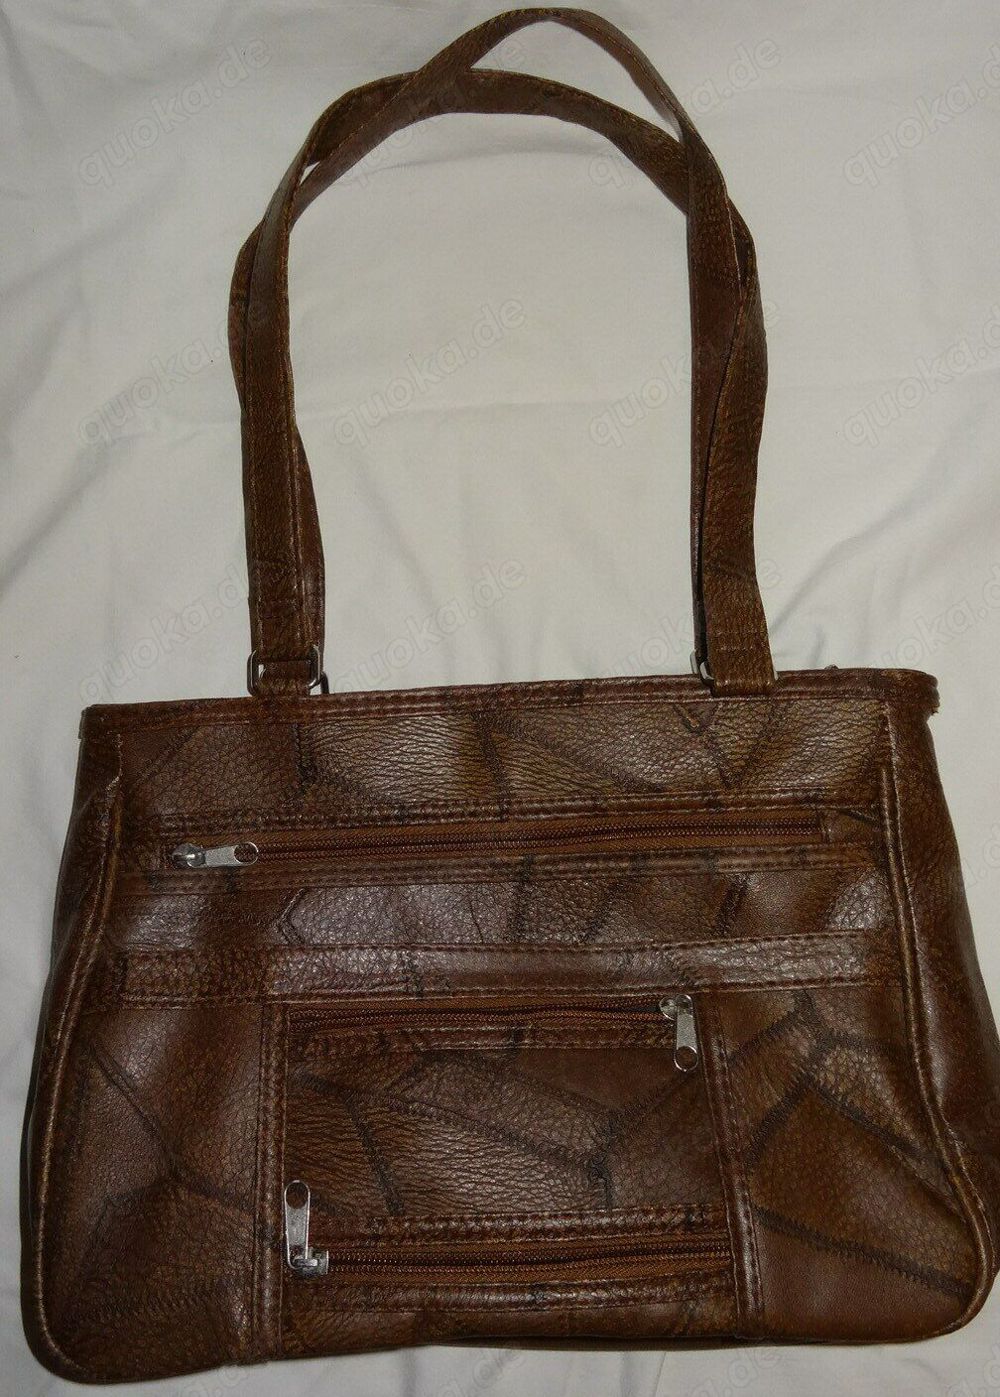 DK Handtasche Damentasche Textilleder braun 30x23x9 unbenutzt einwandfrei erhalten Neuwertig